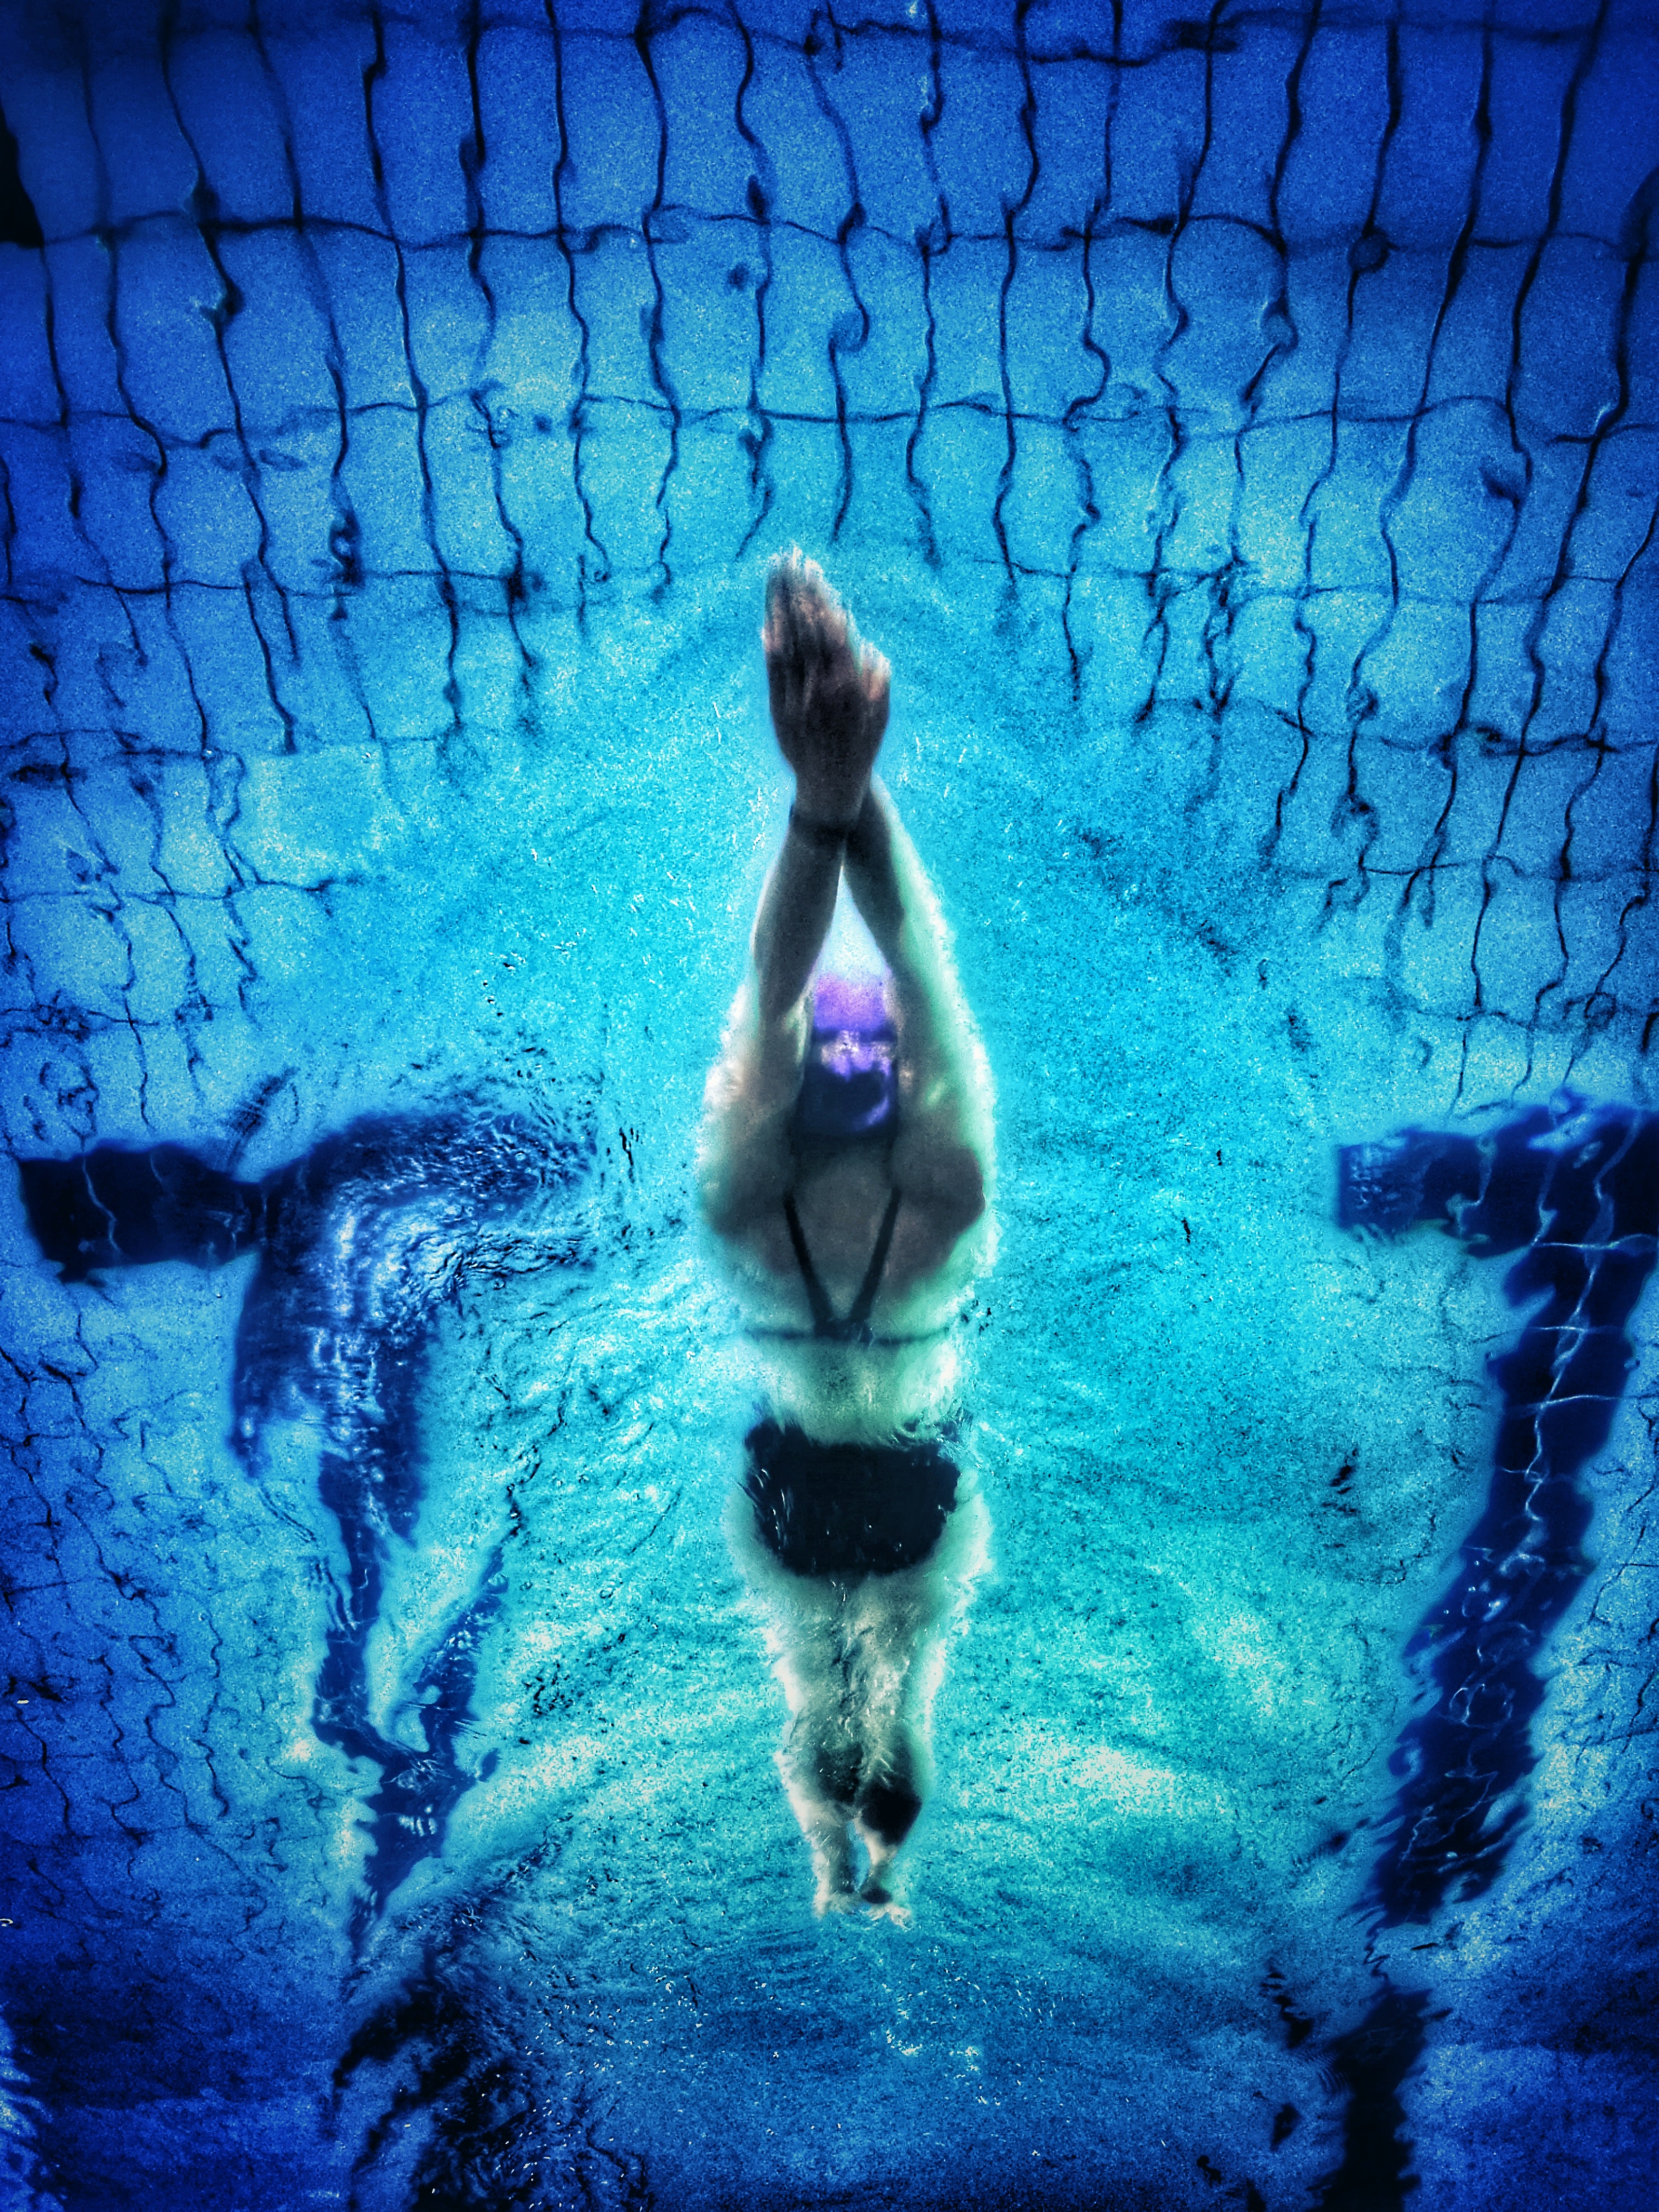 Swimmer doing backstroke start